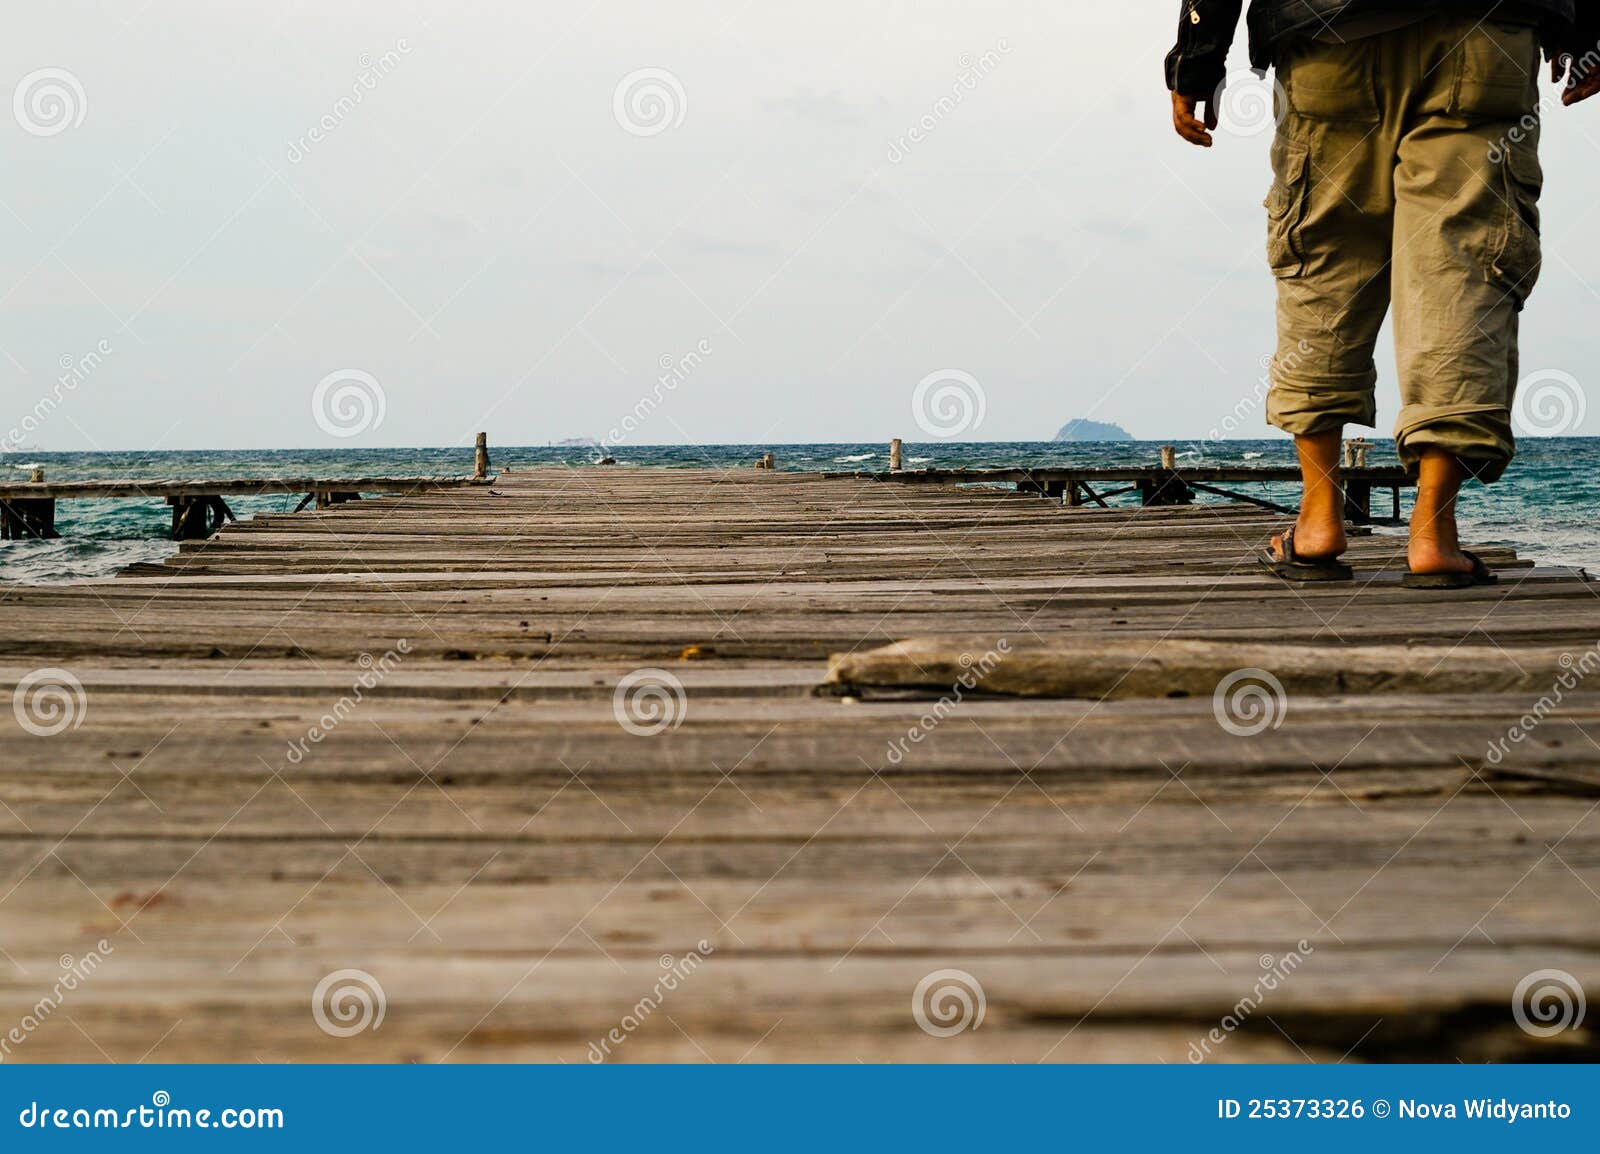 Ein einsamer Mann, der in hölzernen Hafen geht. Nahtlose Beschaffenheit der abstrakten dekorativen Blumen auf einem dunklen Hintergrund